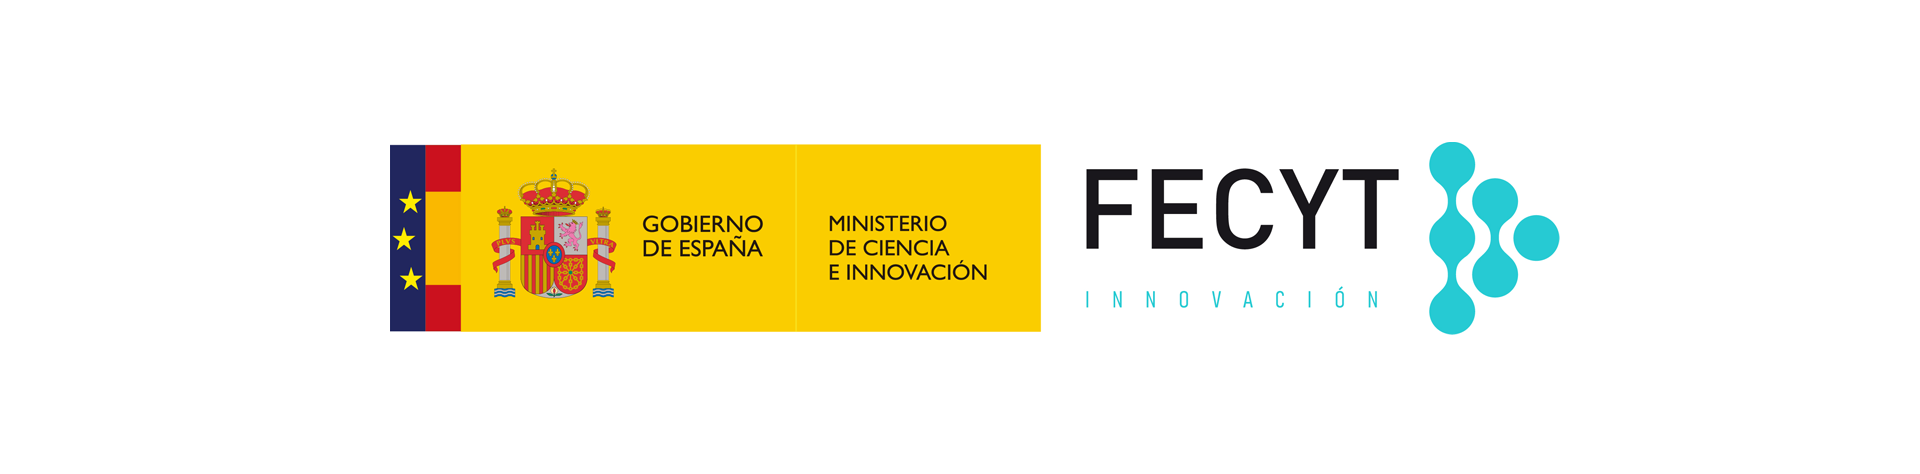 Ministerio Ciencia e Innovación + FECYT